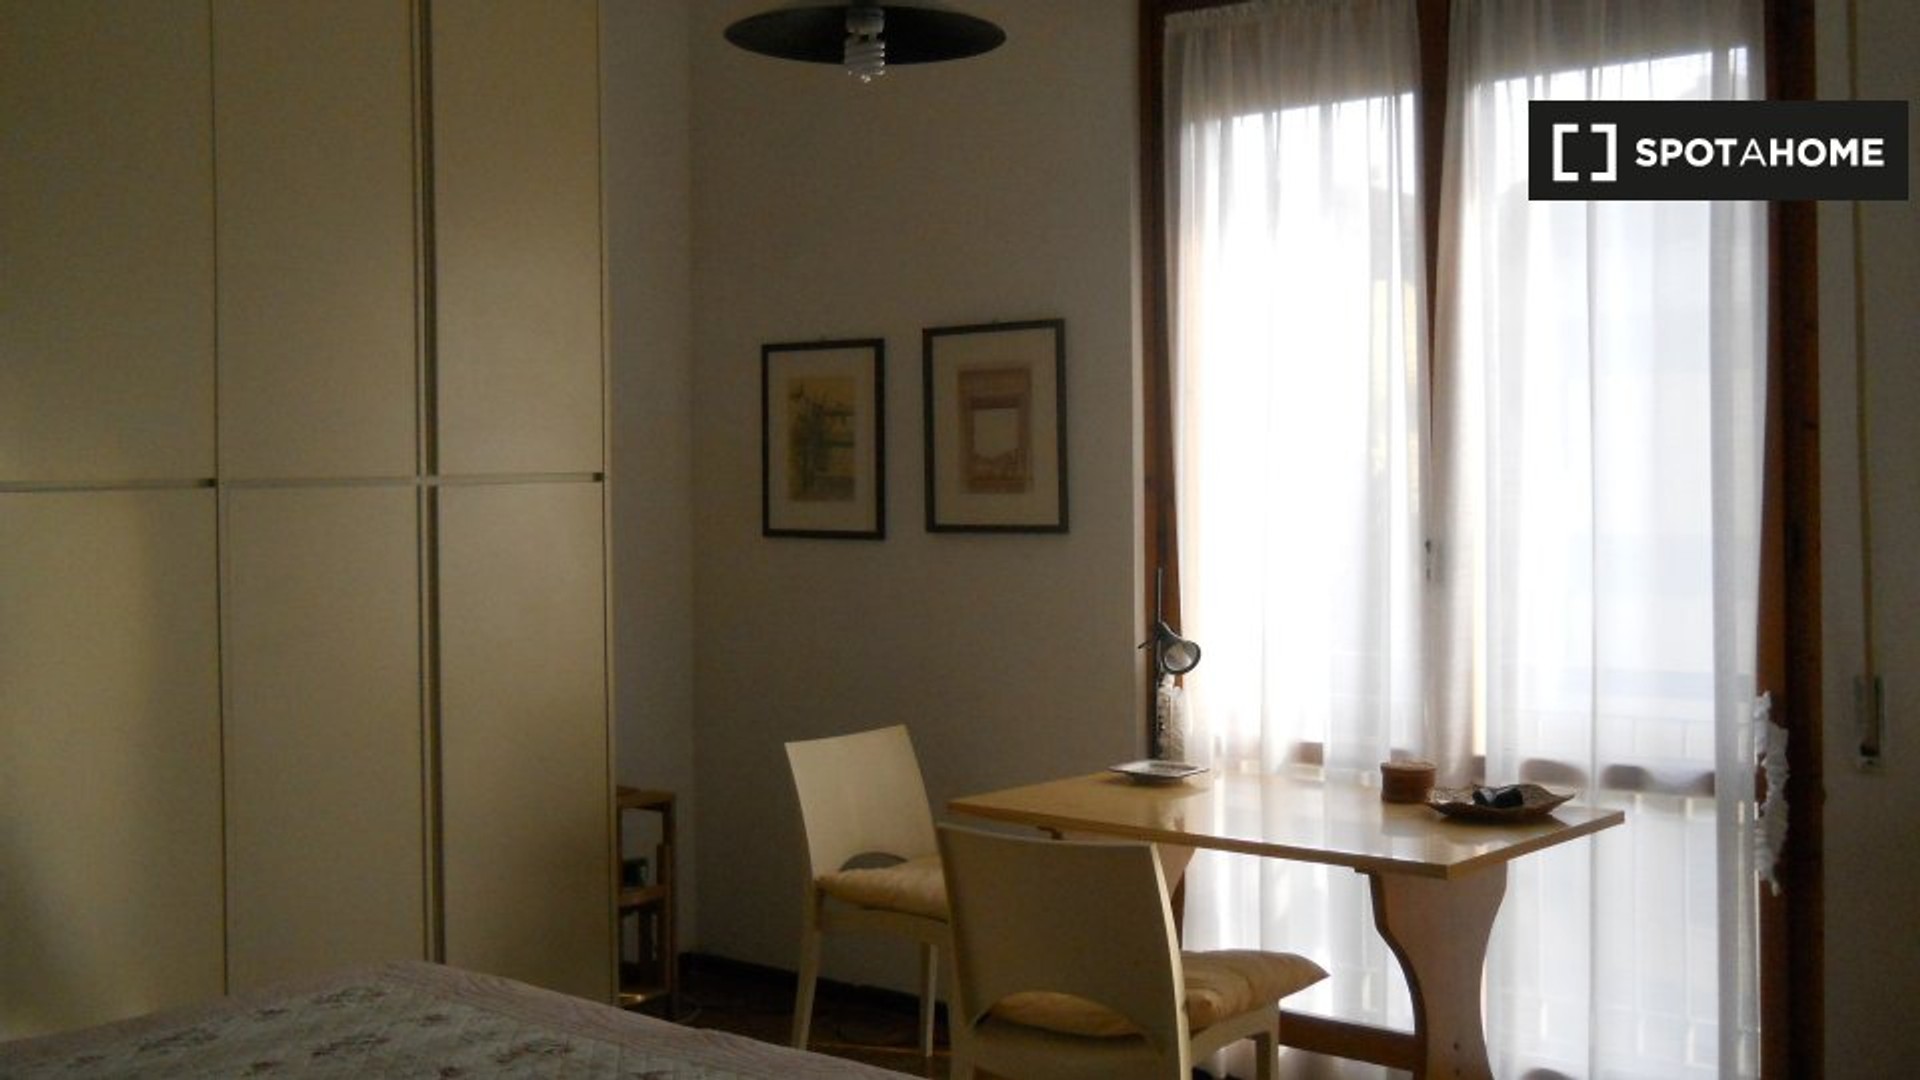 Perugia içinde aydınlık özel oda